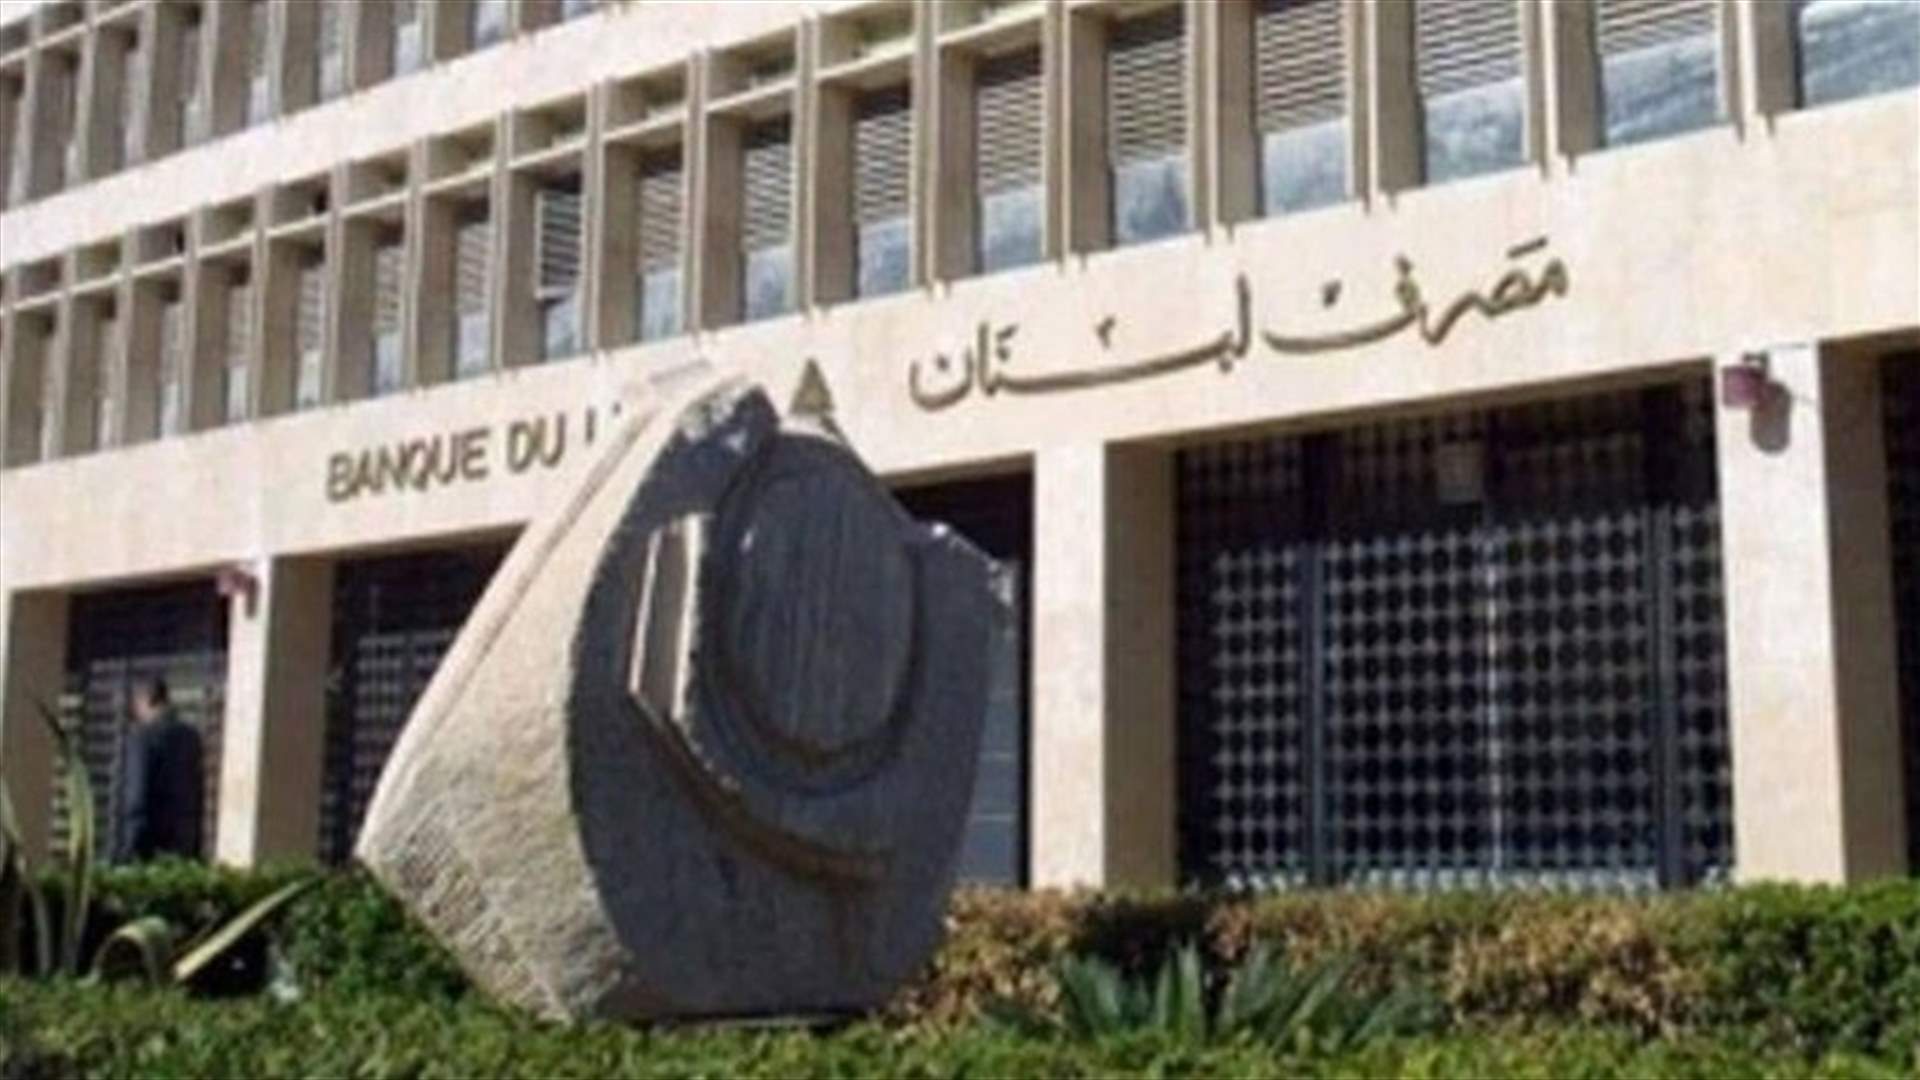 مصرف لبنان للمصارف: لاخذ الموافقة المسبقة على فتح الاعتمادات أو دفع الفواتير لاستيراد المشتقات النفطية